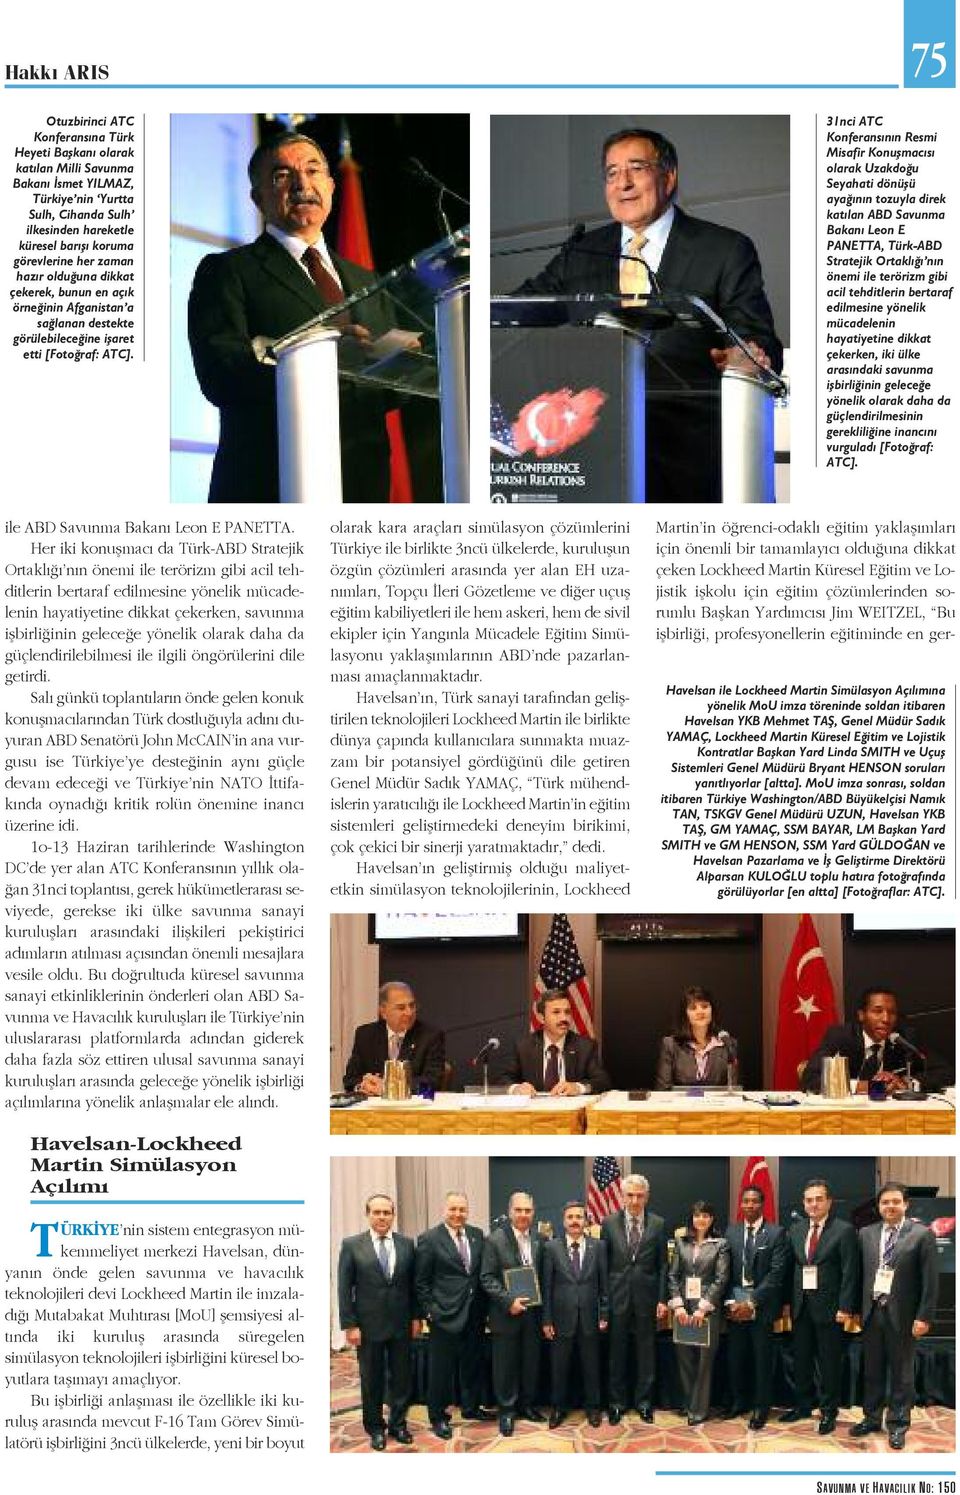 31nci ATC Konferansının Resmi Misafir Konuşmacısı olarak Uzakdoğu Seyahati dönüşü ayağının tozuyla direk katılan ABD Savunma Bakanı Leon E PANETTA, Türk-ABD Stratejik Ortaklığı nın önemi ile terörizm